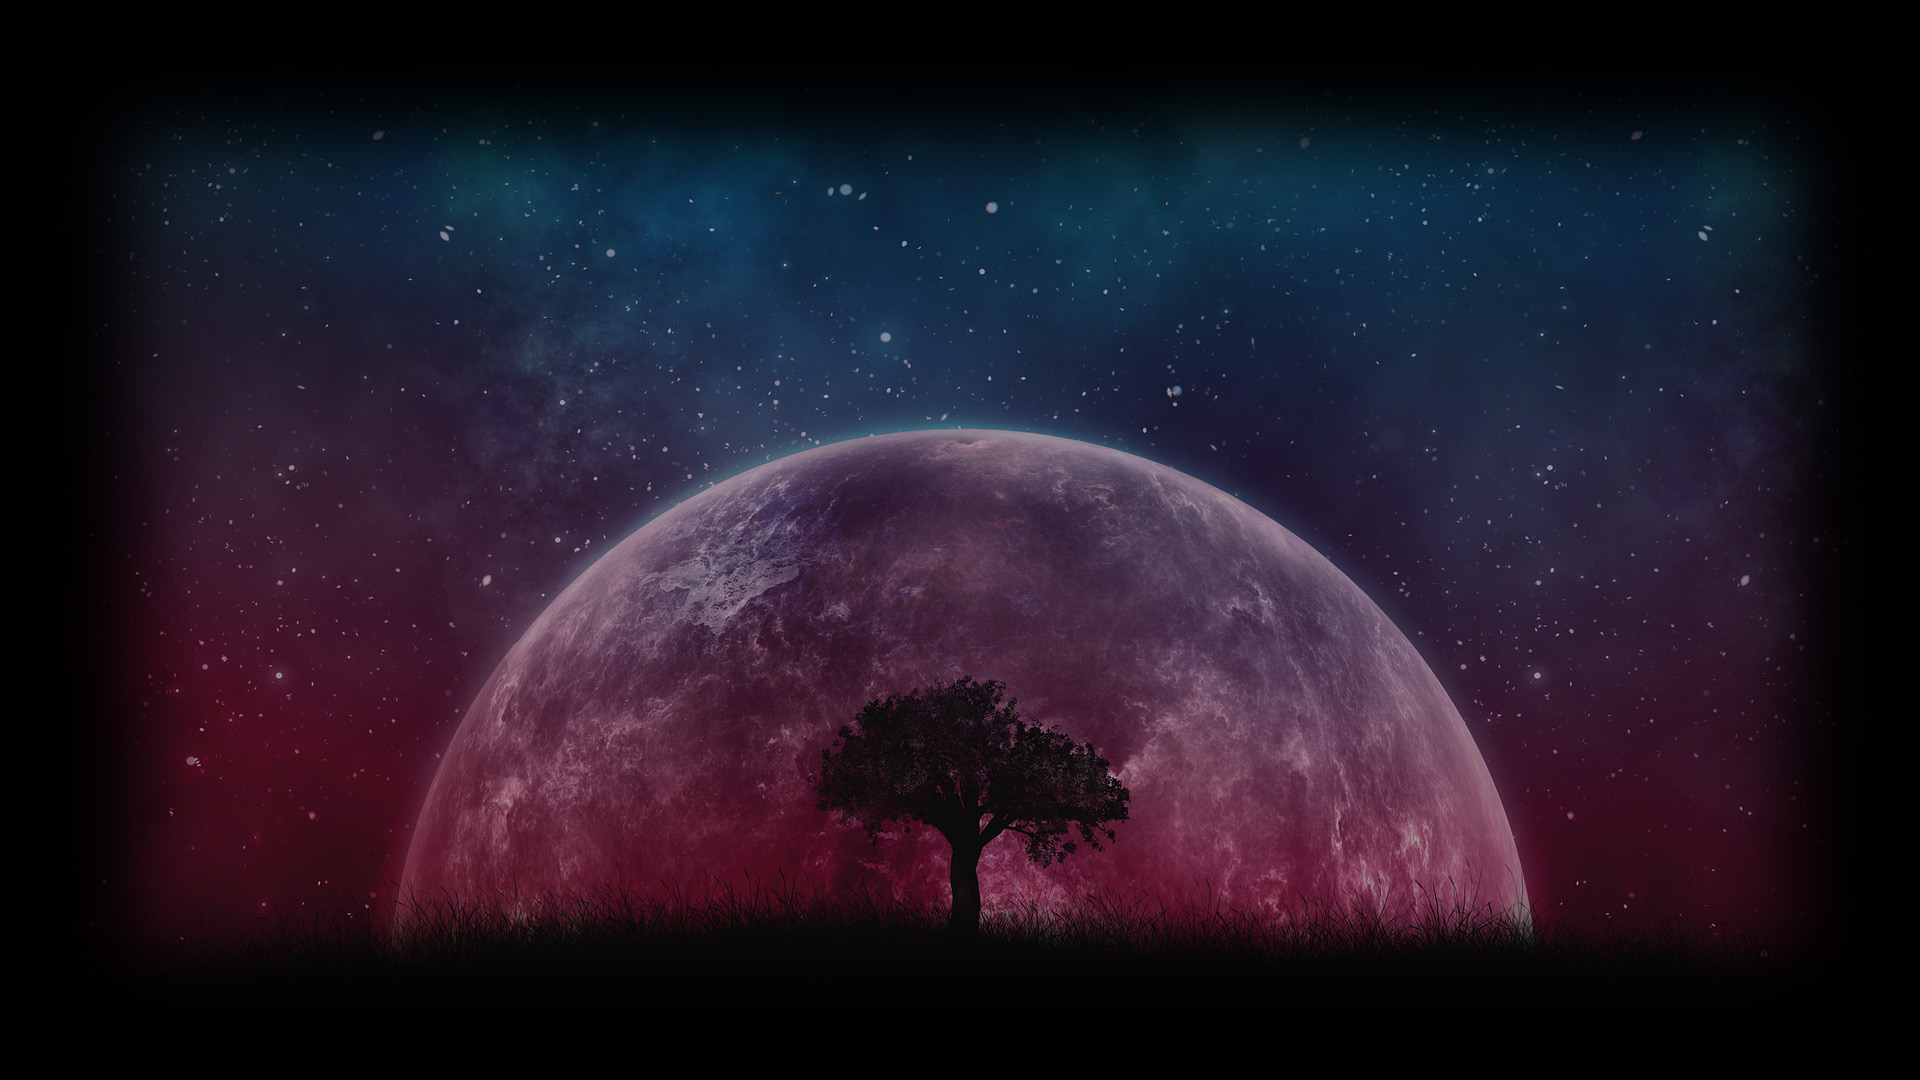 Steam là một thế giới rộng lớn với hàng ngàn sản phẩm đa dạng. Nếu bạn đang tìm kiếm một hình nền đẹp và đặc biệt, thì danh sách cho Red Moon Rising Steam Background đỏ là sự lựa chọn hoàn hảo để làm tươi mới giao diện của bạn trong một cú nhấp chuột.